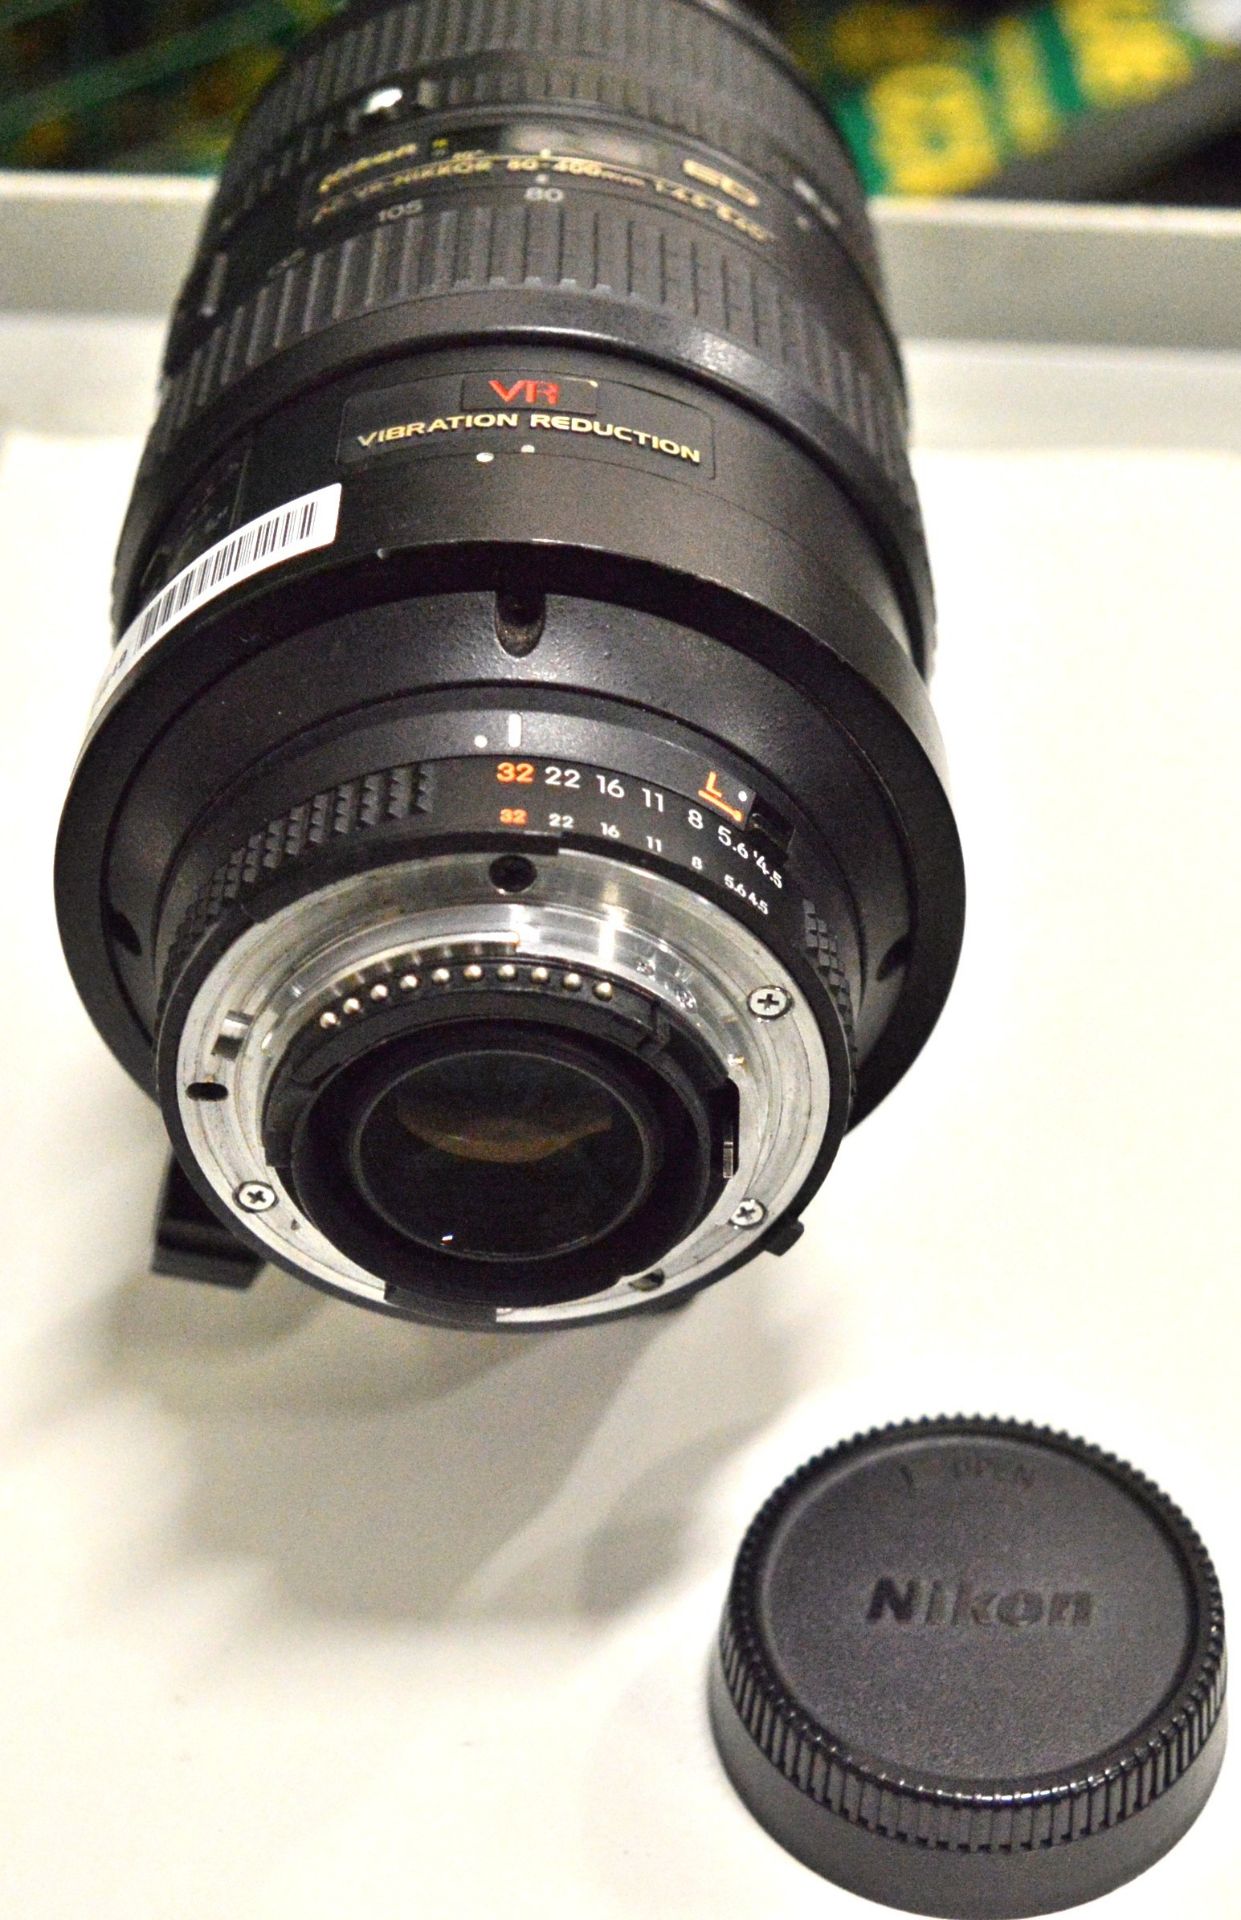 Nikon Lens AF-Nikkor 80-400mm 1:4.5-5.6D - Serial No. 239811. - Image 6 of 6